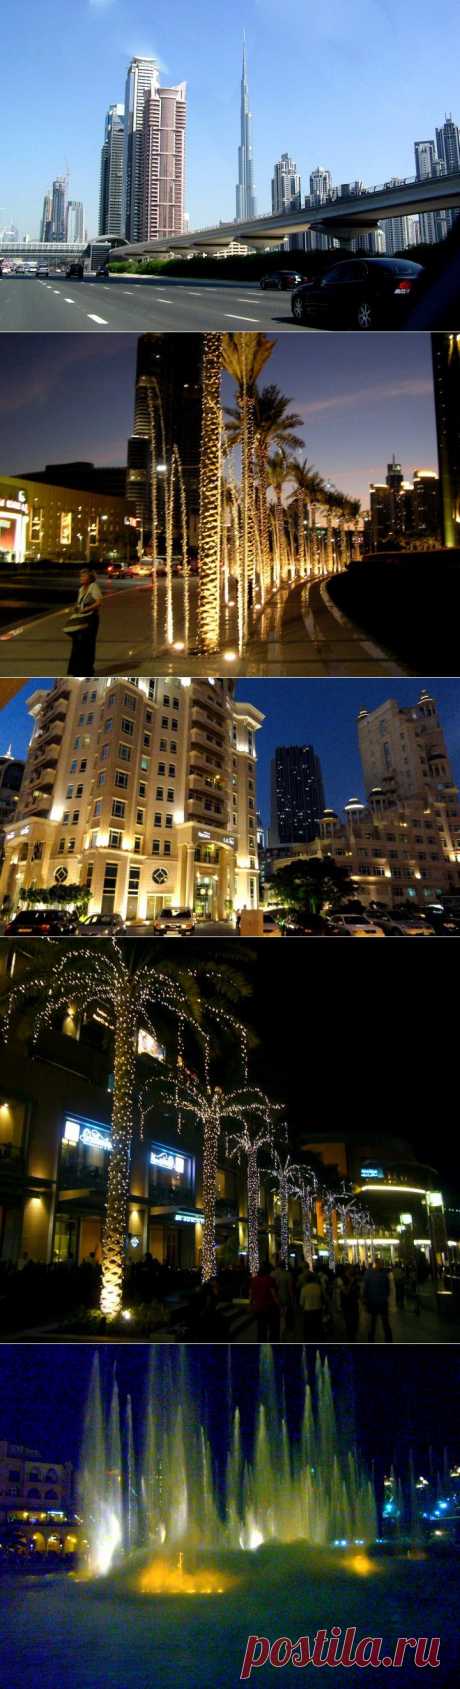 (+1) - Дубай- Бурдж-Хали́фа и вокруг ее | ТУРИЗМ И ОТДЫХ